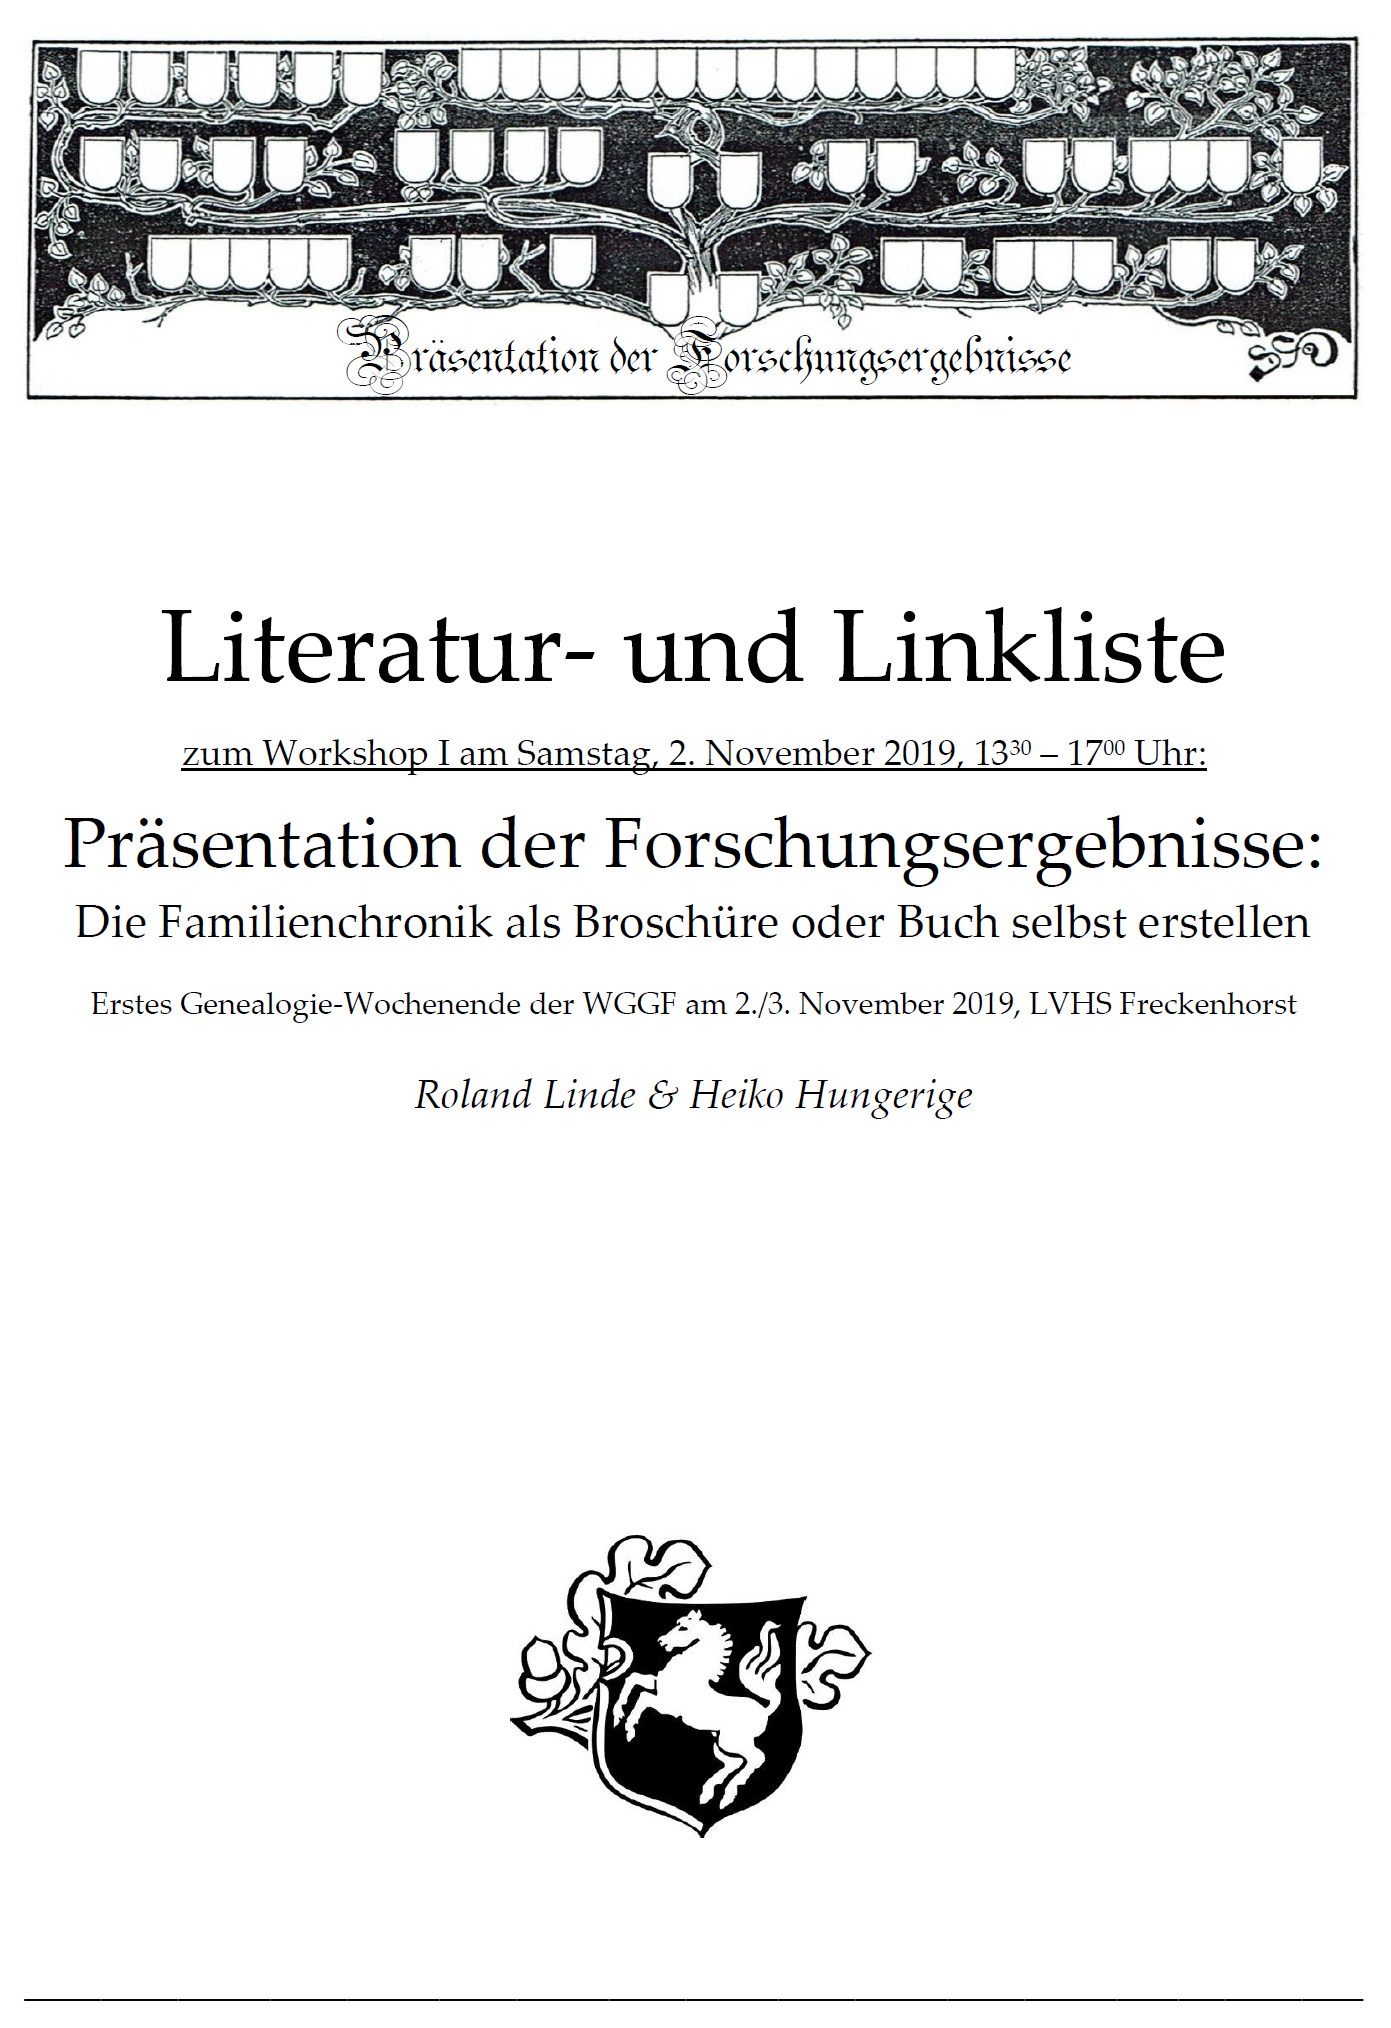 Linde & Hungerige (2019), Literatur- und Linkliste zum Thema 'Die Familienchronik als Broschüre oder Buch selbst erstellen'